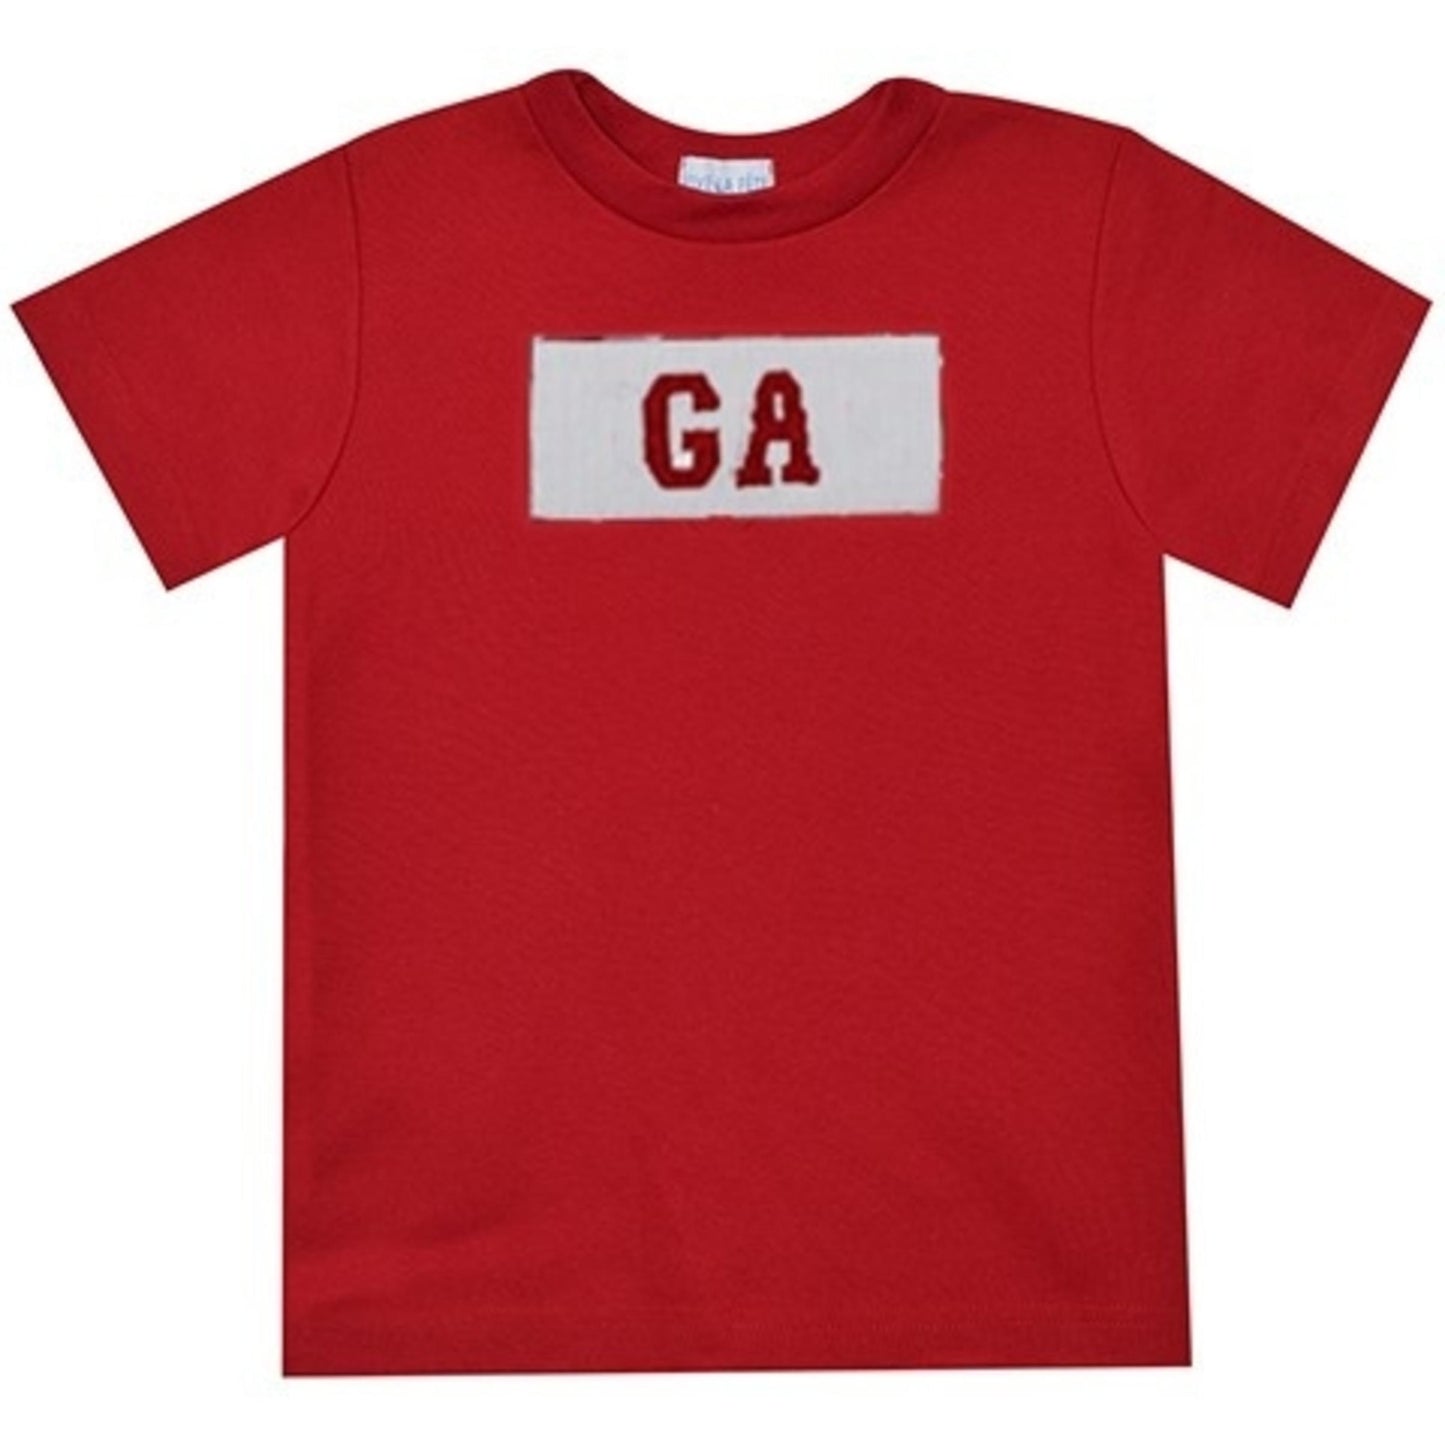 Georgia Smocked Knit Red Shirt